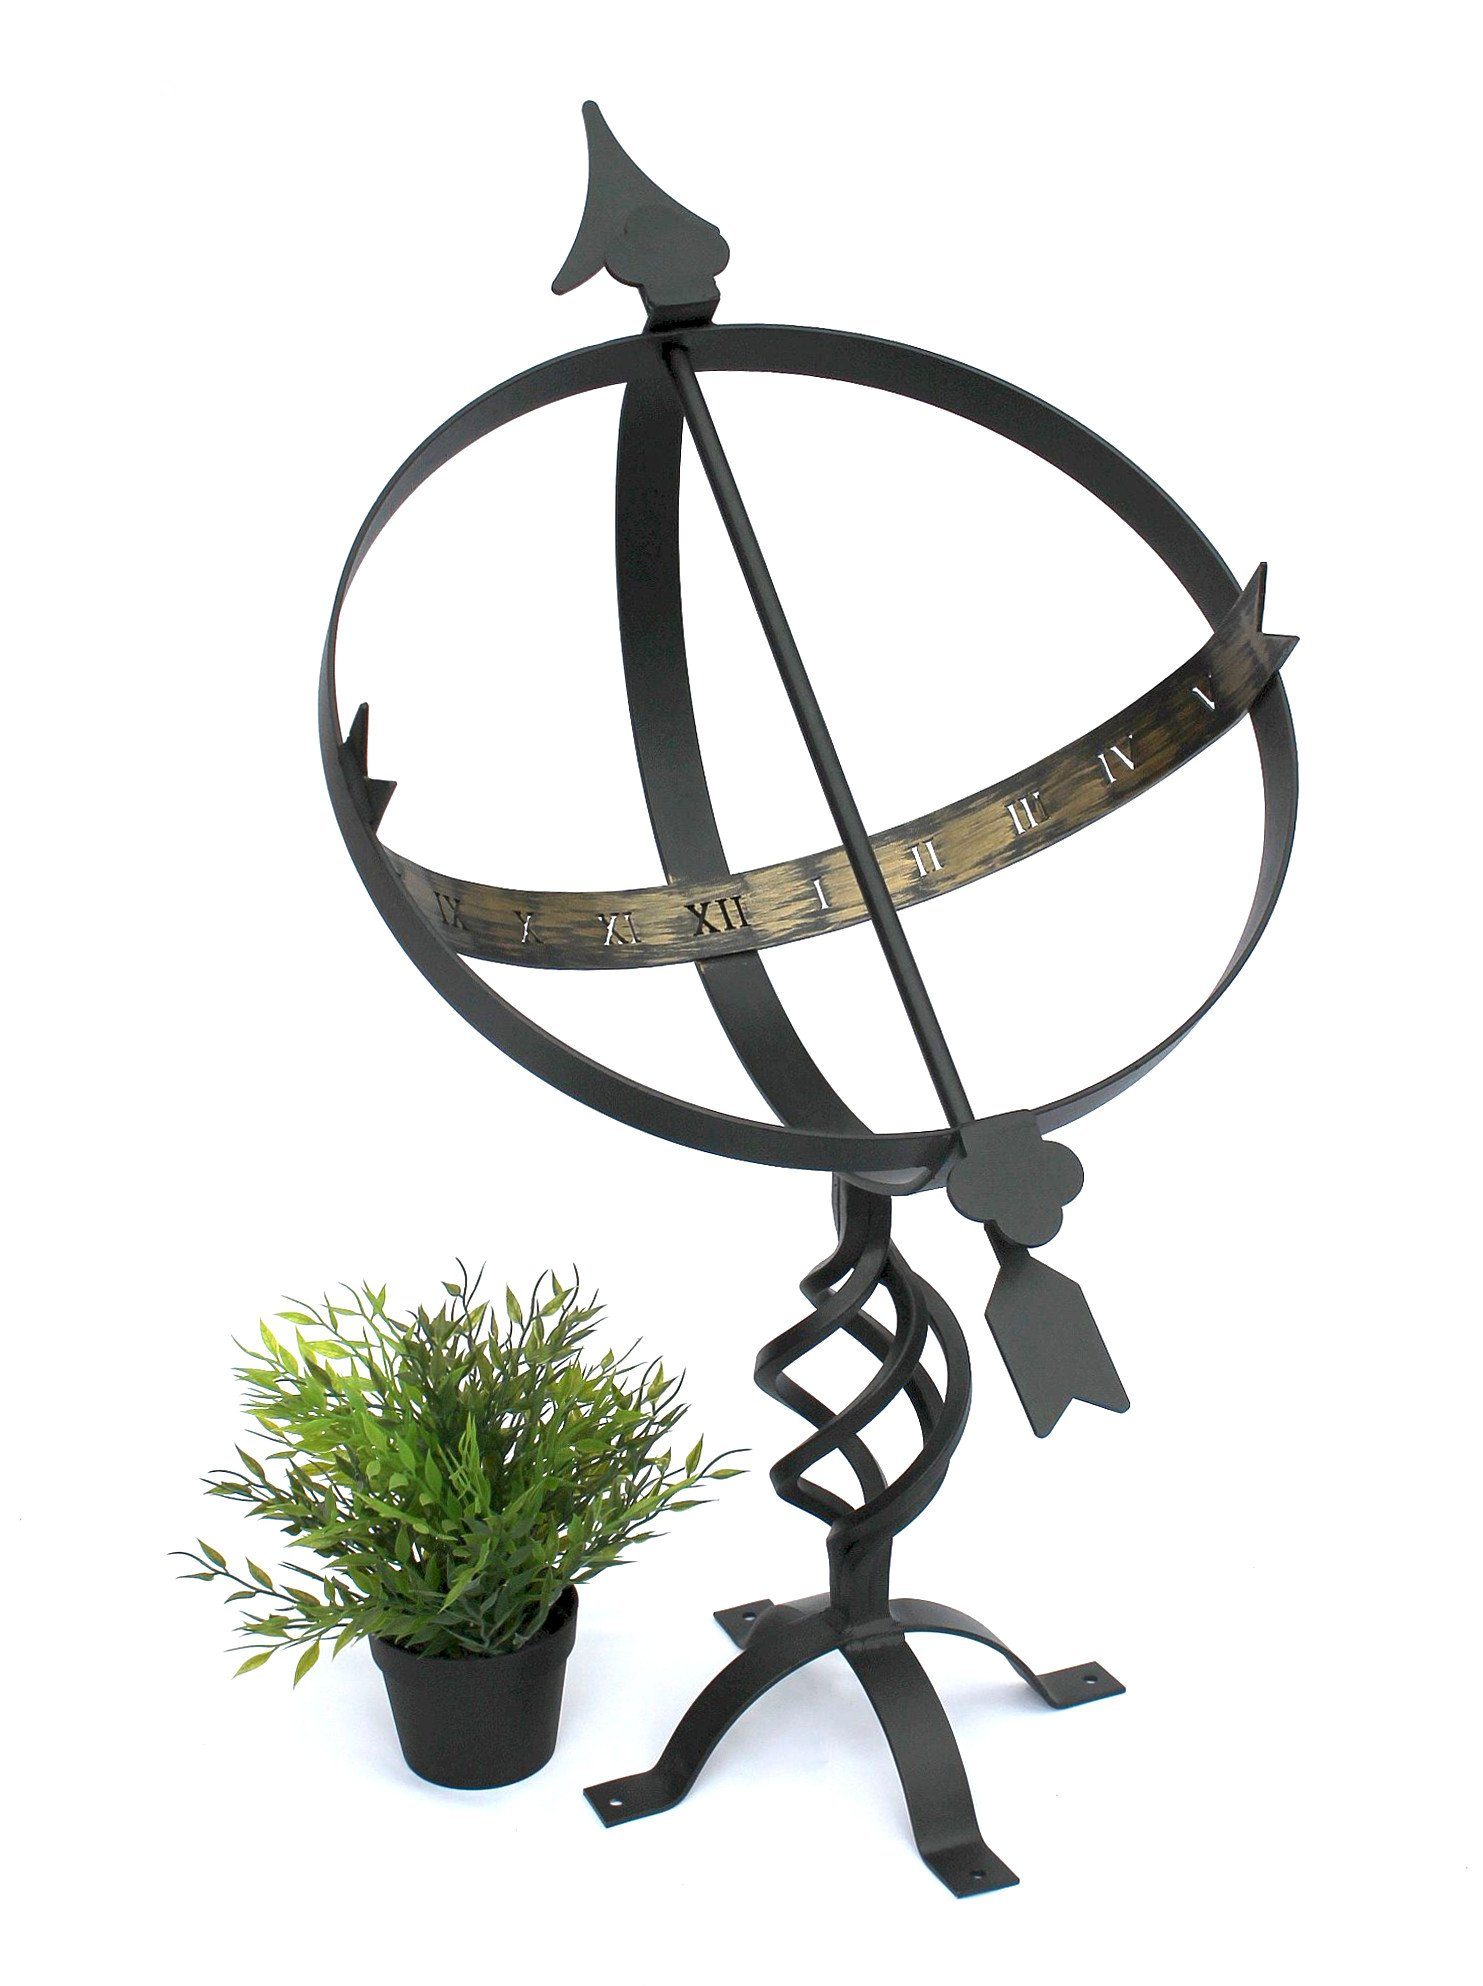 Schwarz Metall Gartenuhr Gartenfigur cm DanDiBo Schmiedeeisen Wetterfest Sonnenuhr 70 aus